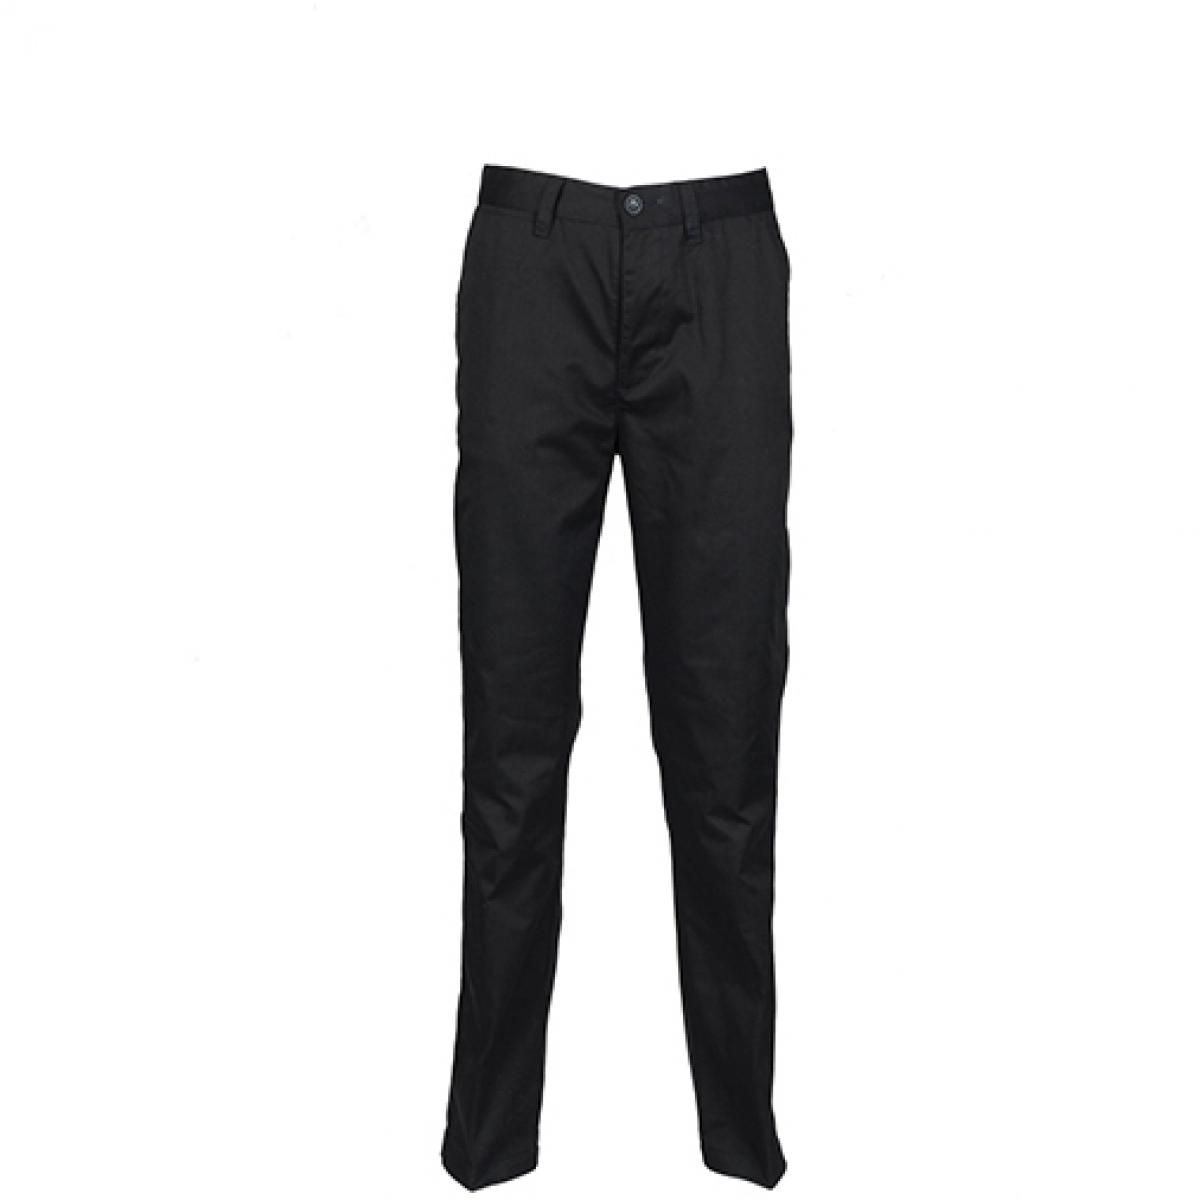 Hersteller: Henbury Herstellernummer: H640 Artikelbezeichnung: Men’s 65/35 Chino Trousers Farbe: Black